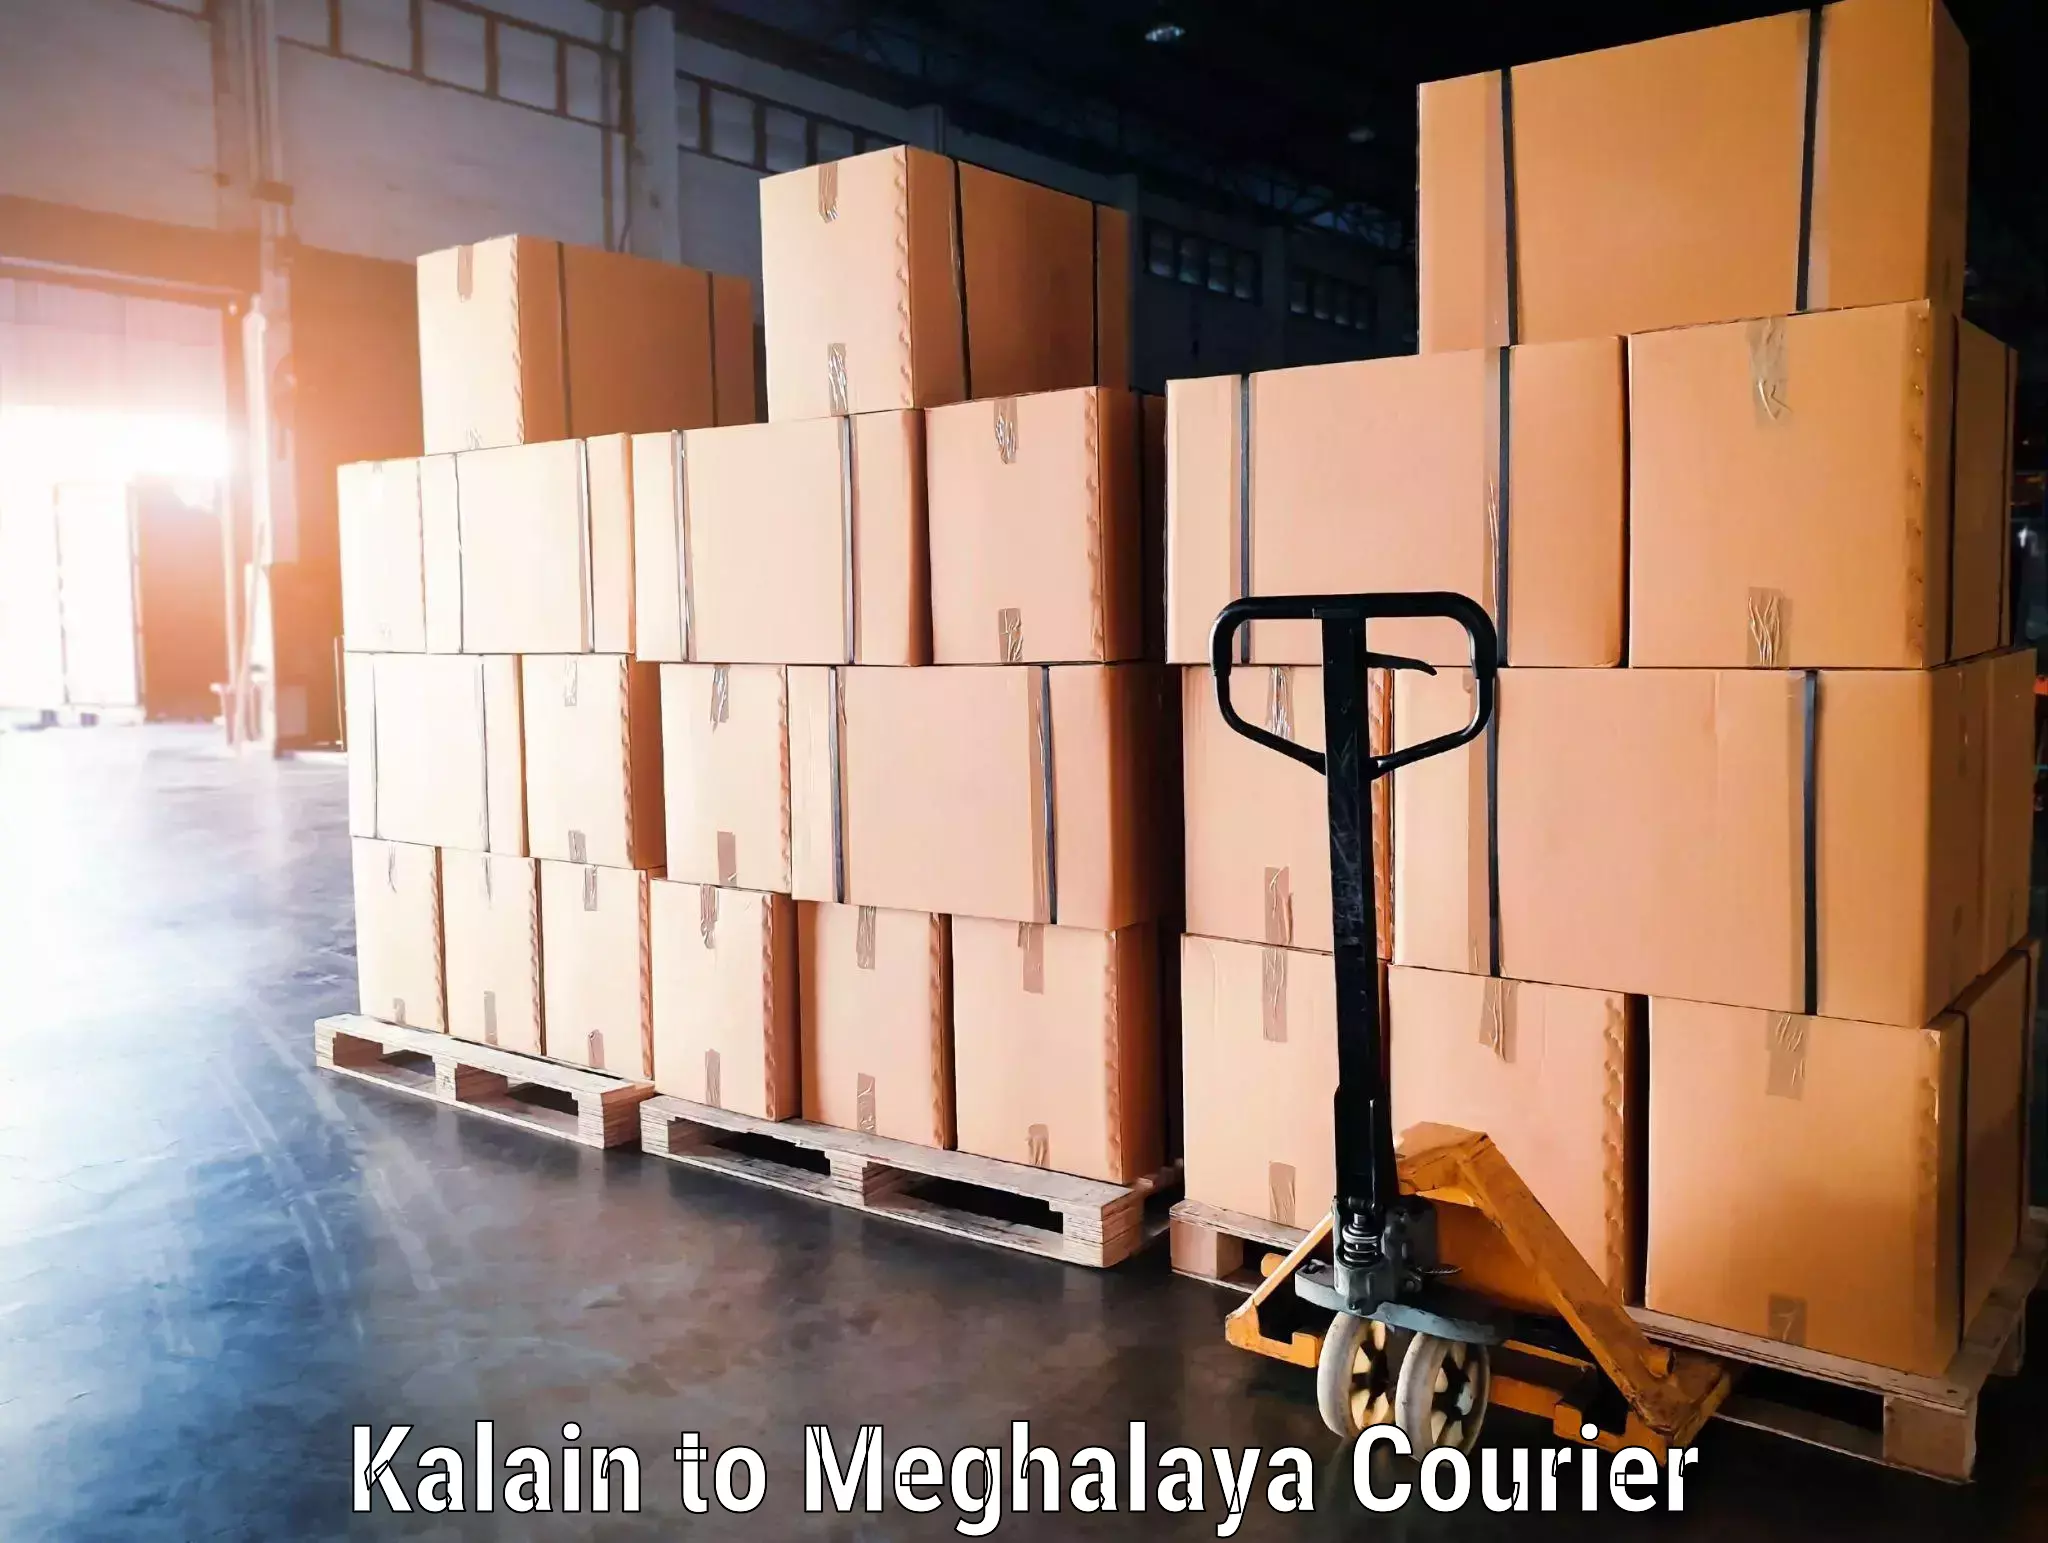 Baggage transport professionals Kalain to Meghalaya